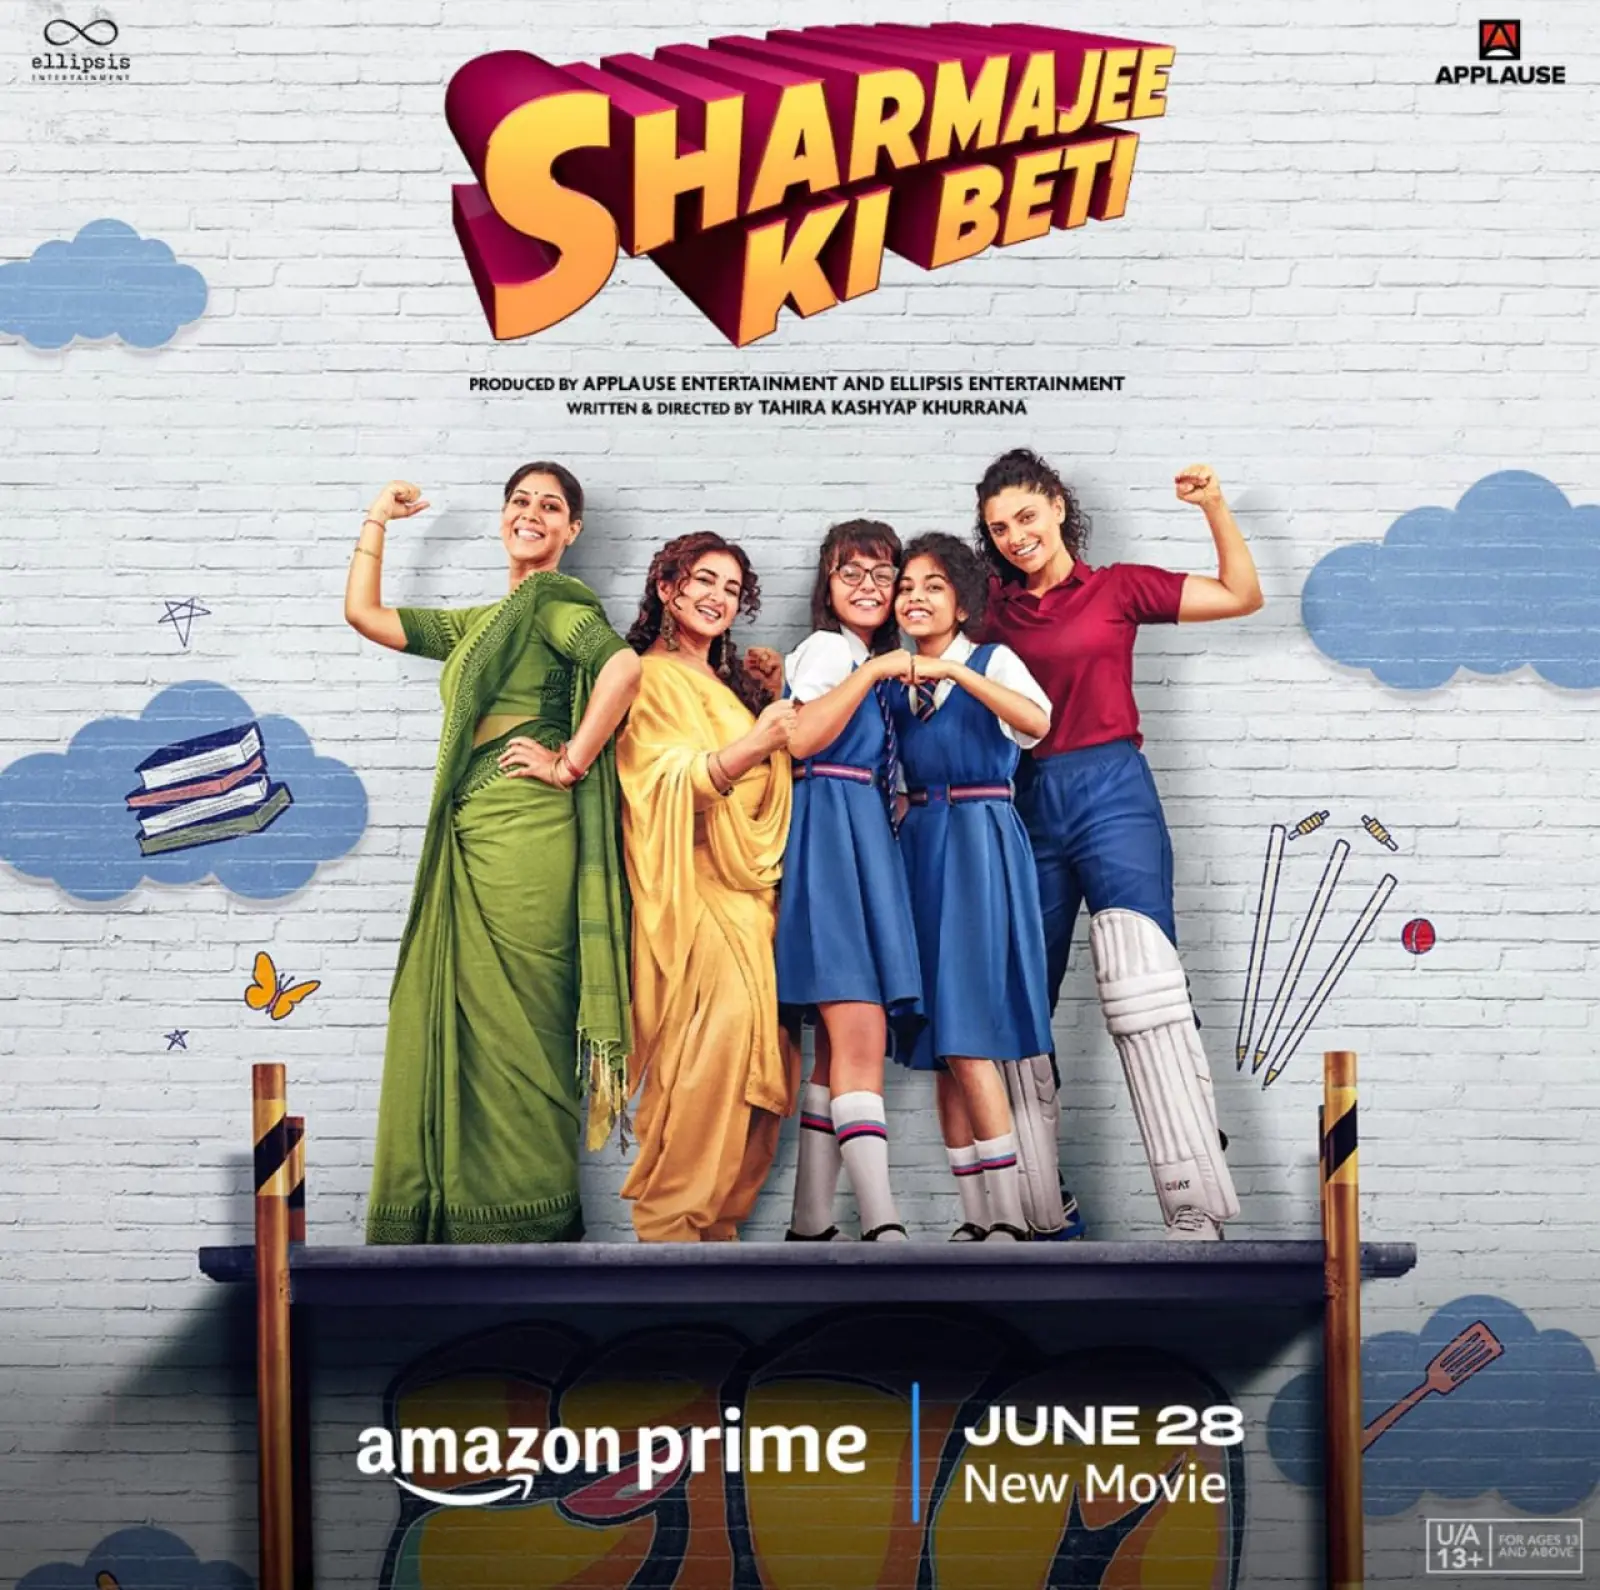 प्राइम वीडियो ने 28 जून को ताहिरा कश्यप खुराना की डायरेक्टोरियल डेब्यू फिल्म शर्माजी की बेटी के एक्सक्लूसिव प्रीमियर की घोषणा की